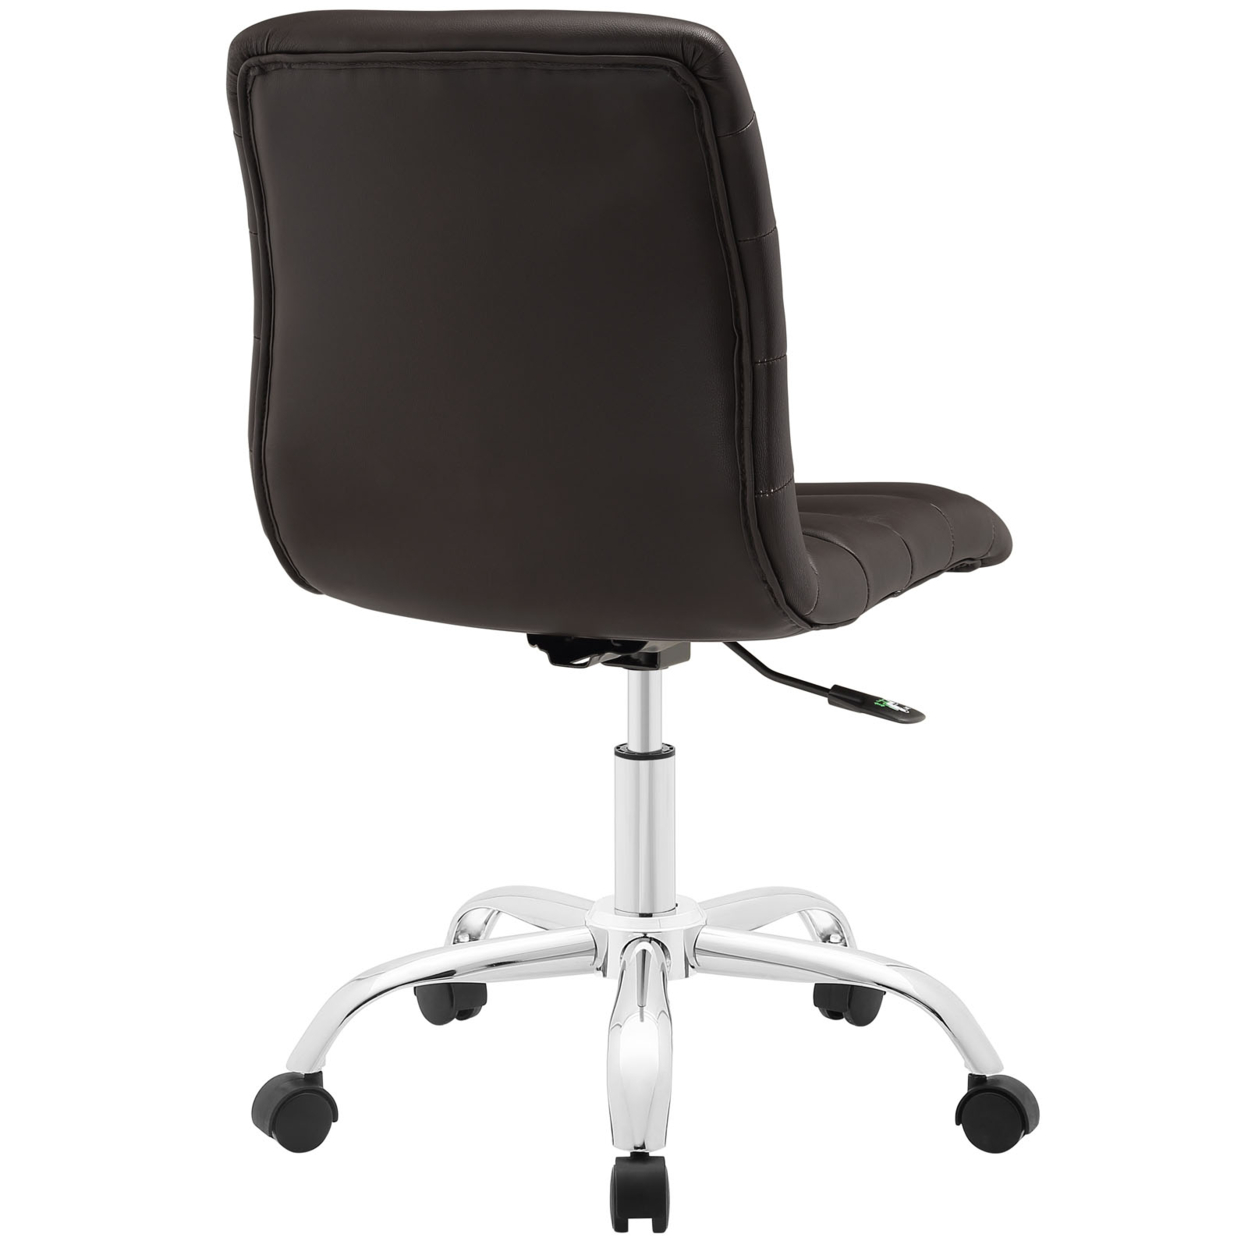 Ripple Armless Mid Back Office Chair, EEI-1532-BRN